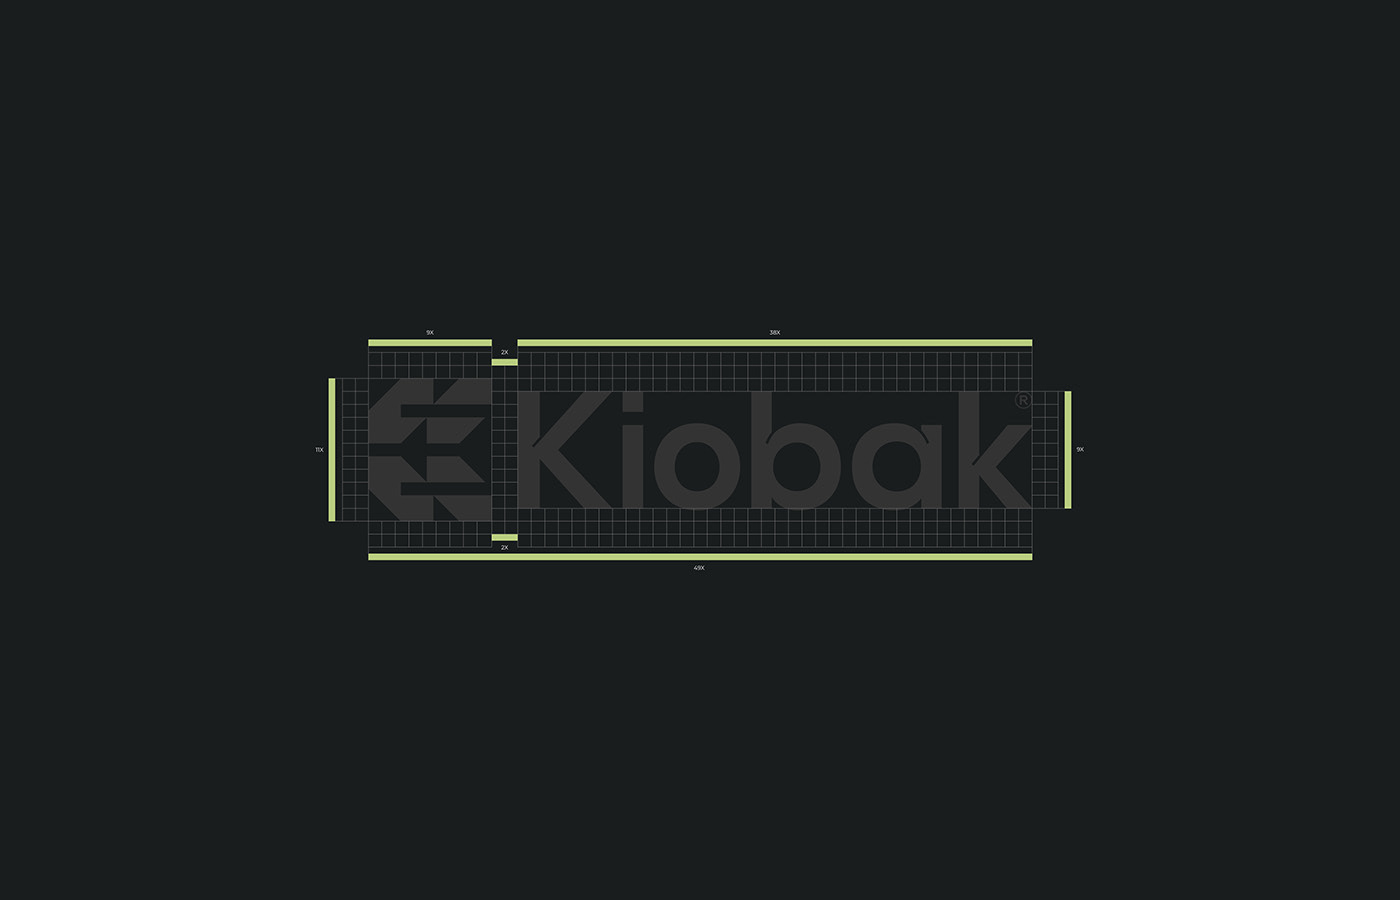 Kiobak logo spacing and grids